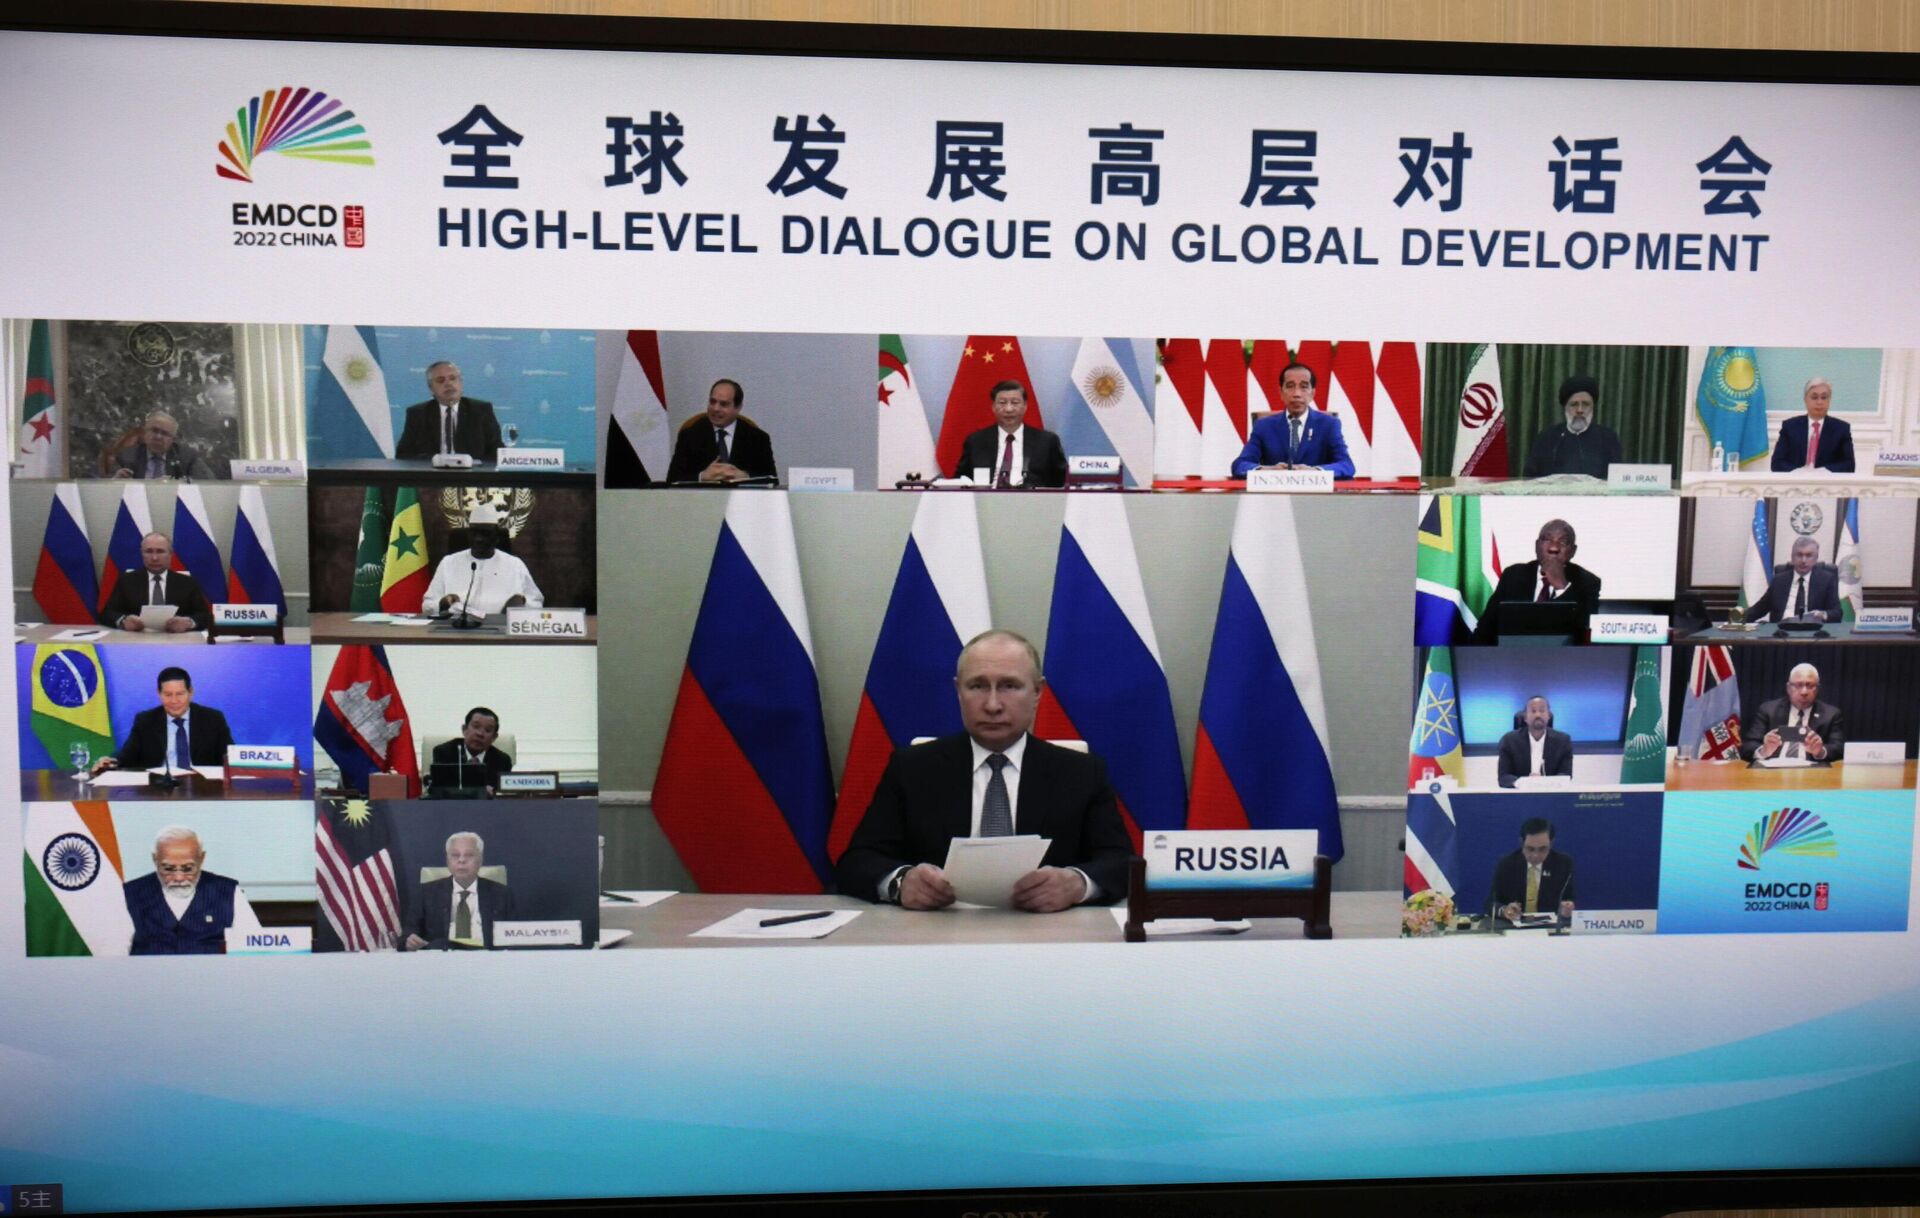 Tổng thống Nga Vladimir Putin tham gia hội nghị thượng đỉnh BRICS - Sputnik Việt Nam, 1920, 27.06.2022